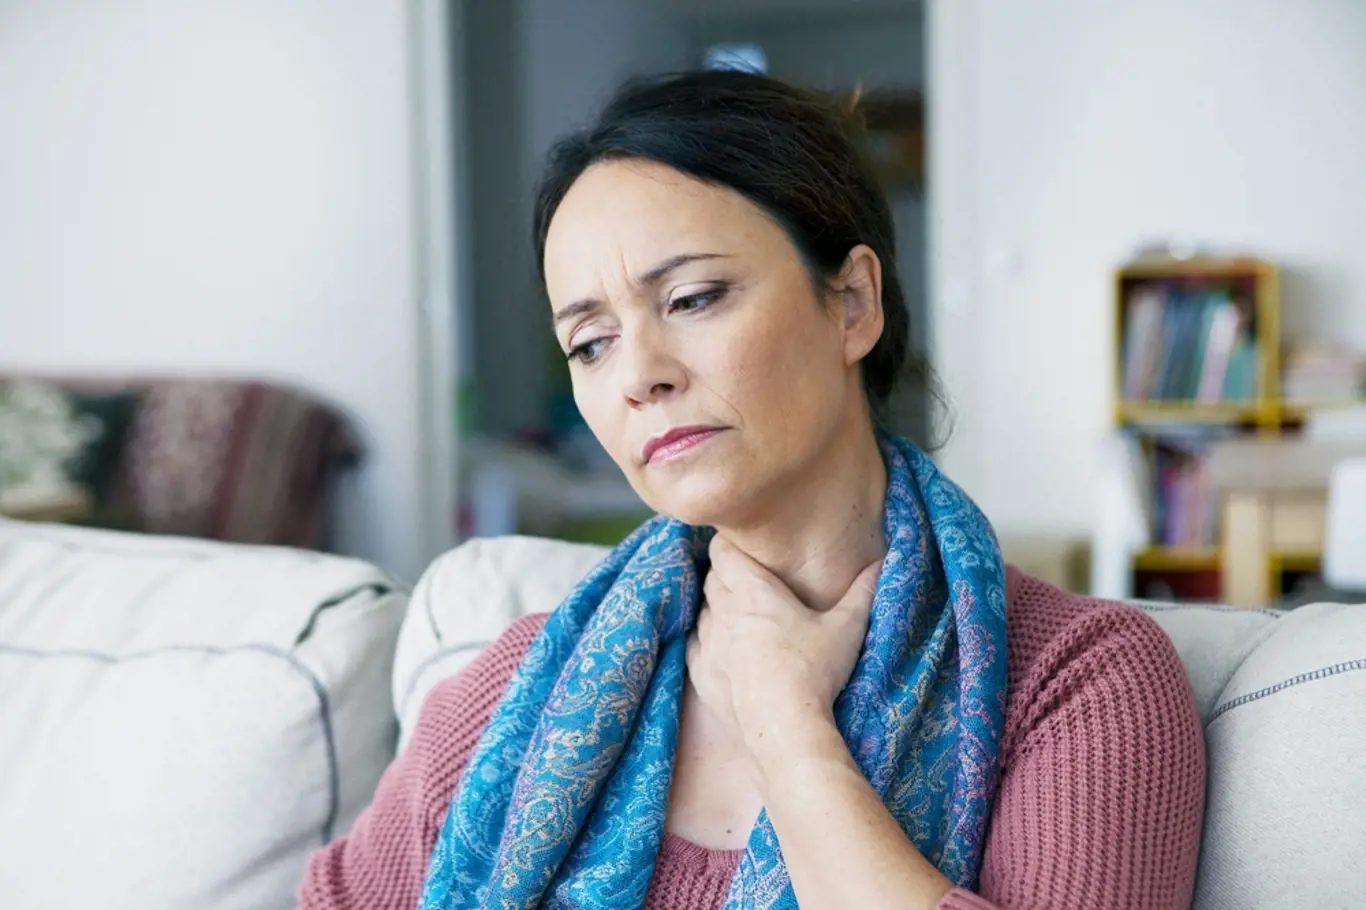 Dušnost při fyzické námaze nebo únava může signalizovat plicní hypertenzi